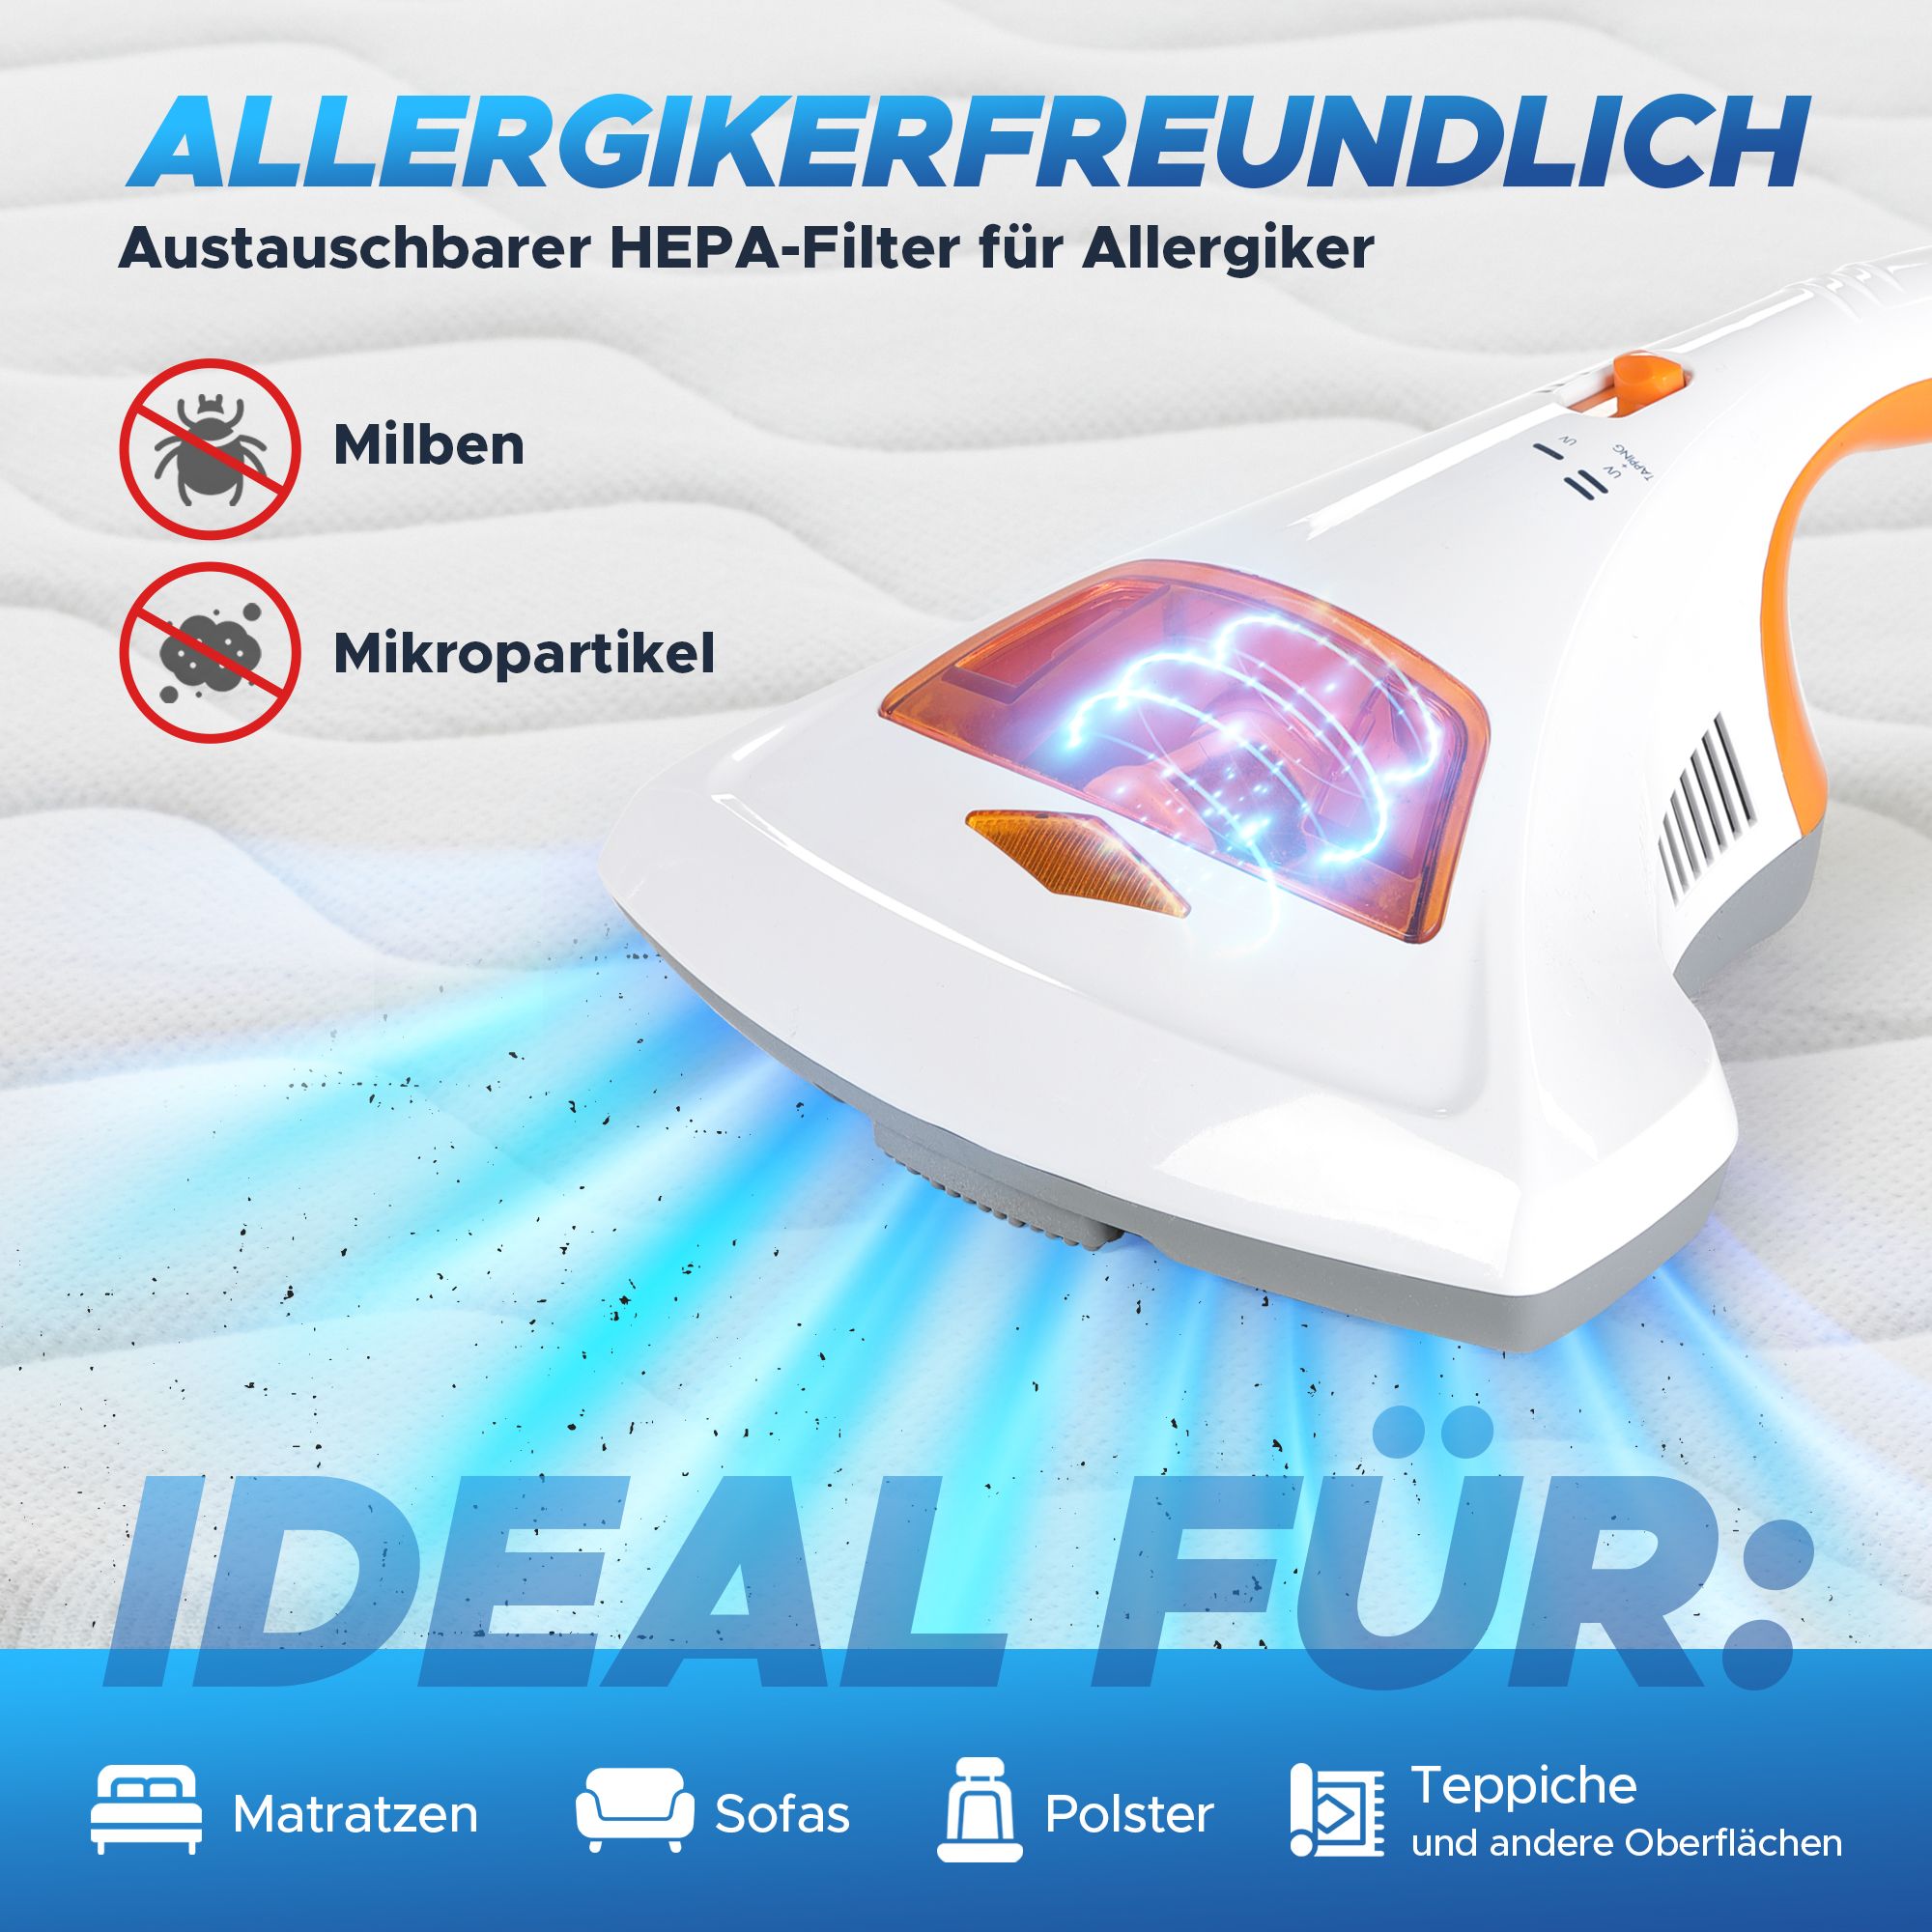 aktimeo Milben-Handstaubsauger UV-C Licht, 99,9% Sterilisation u. Reinigung, Matratzensauger